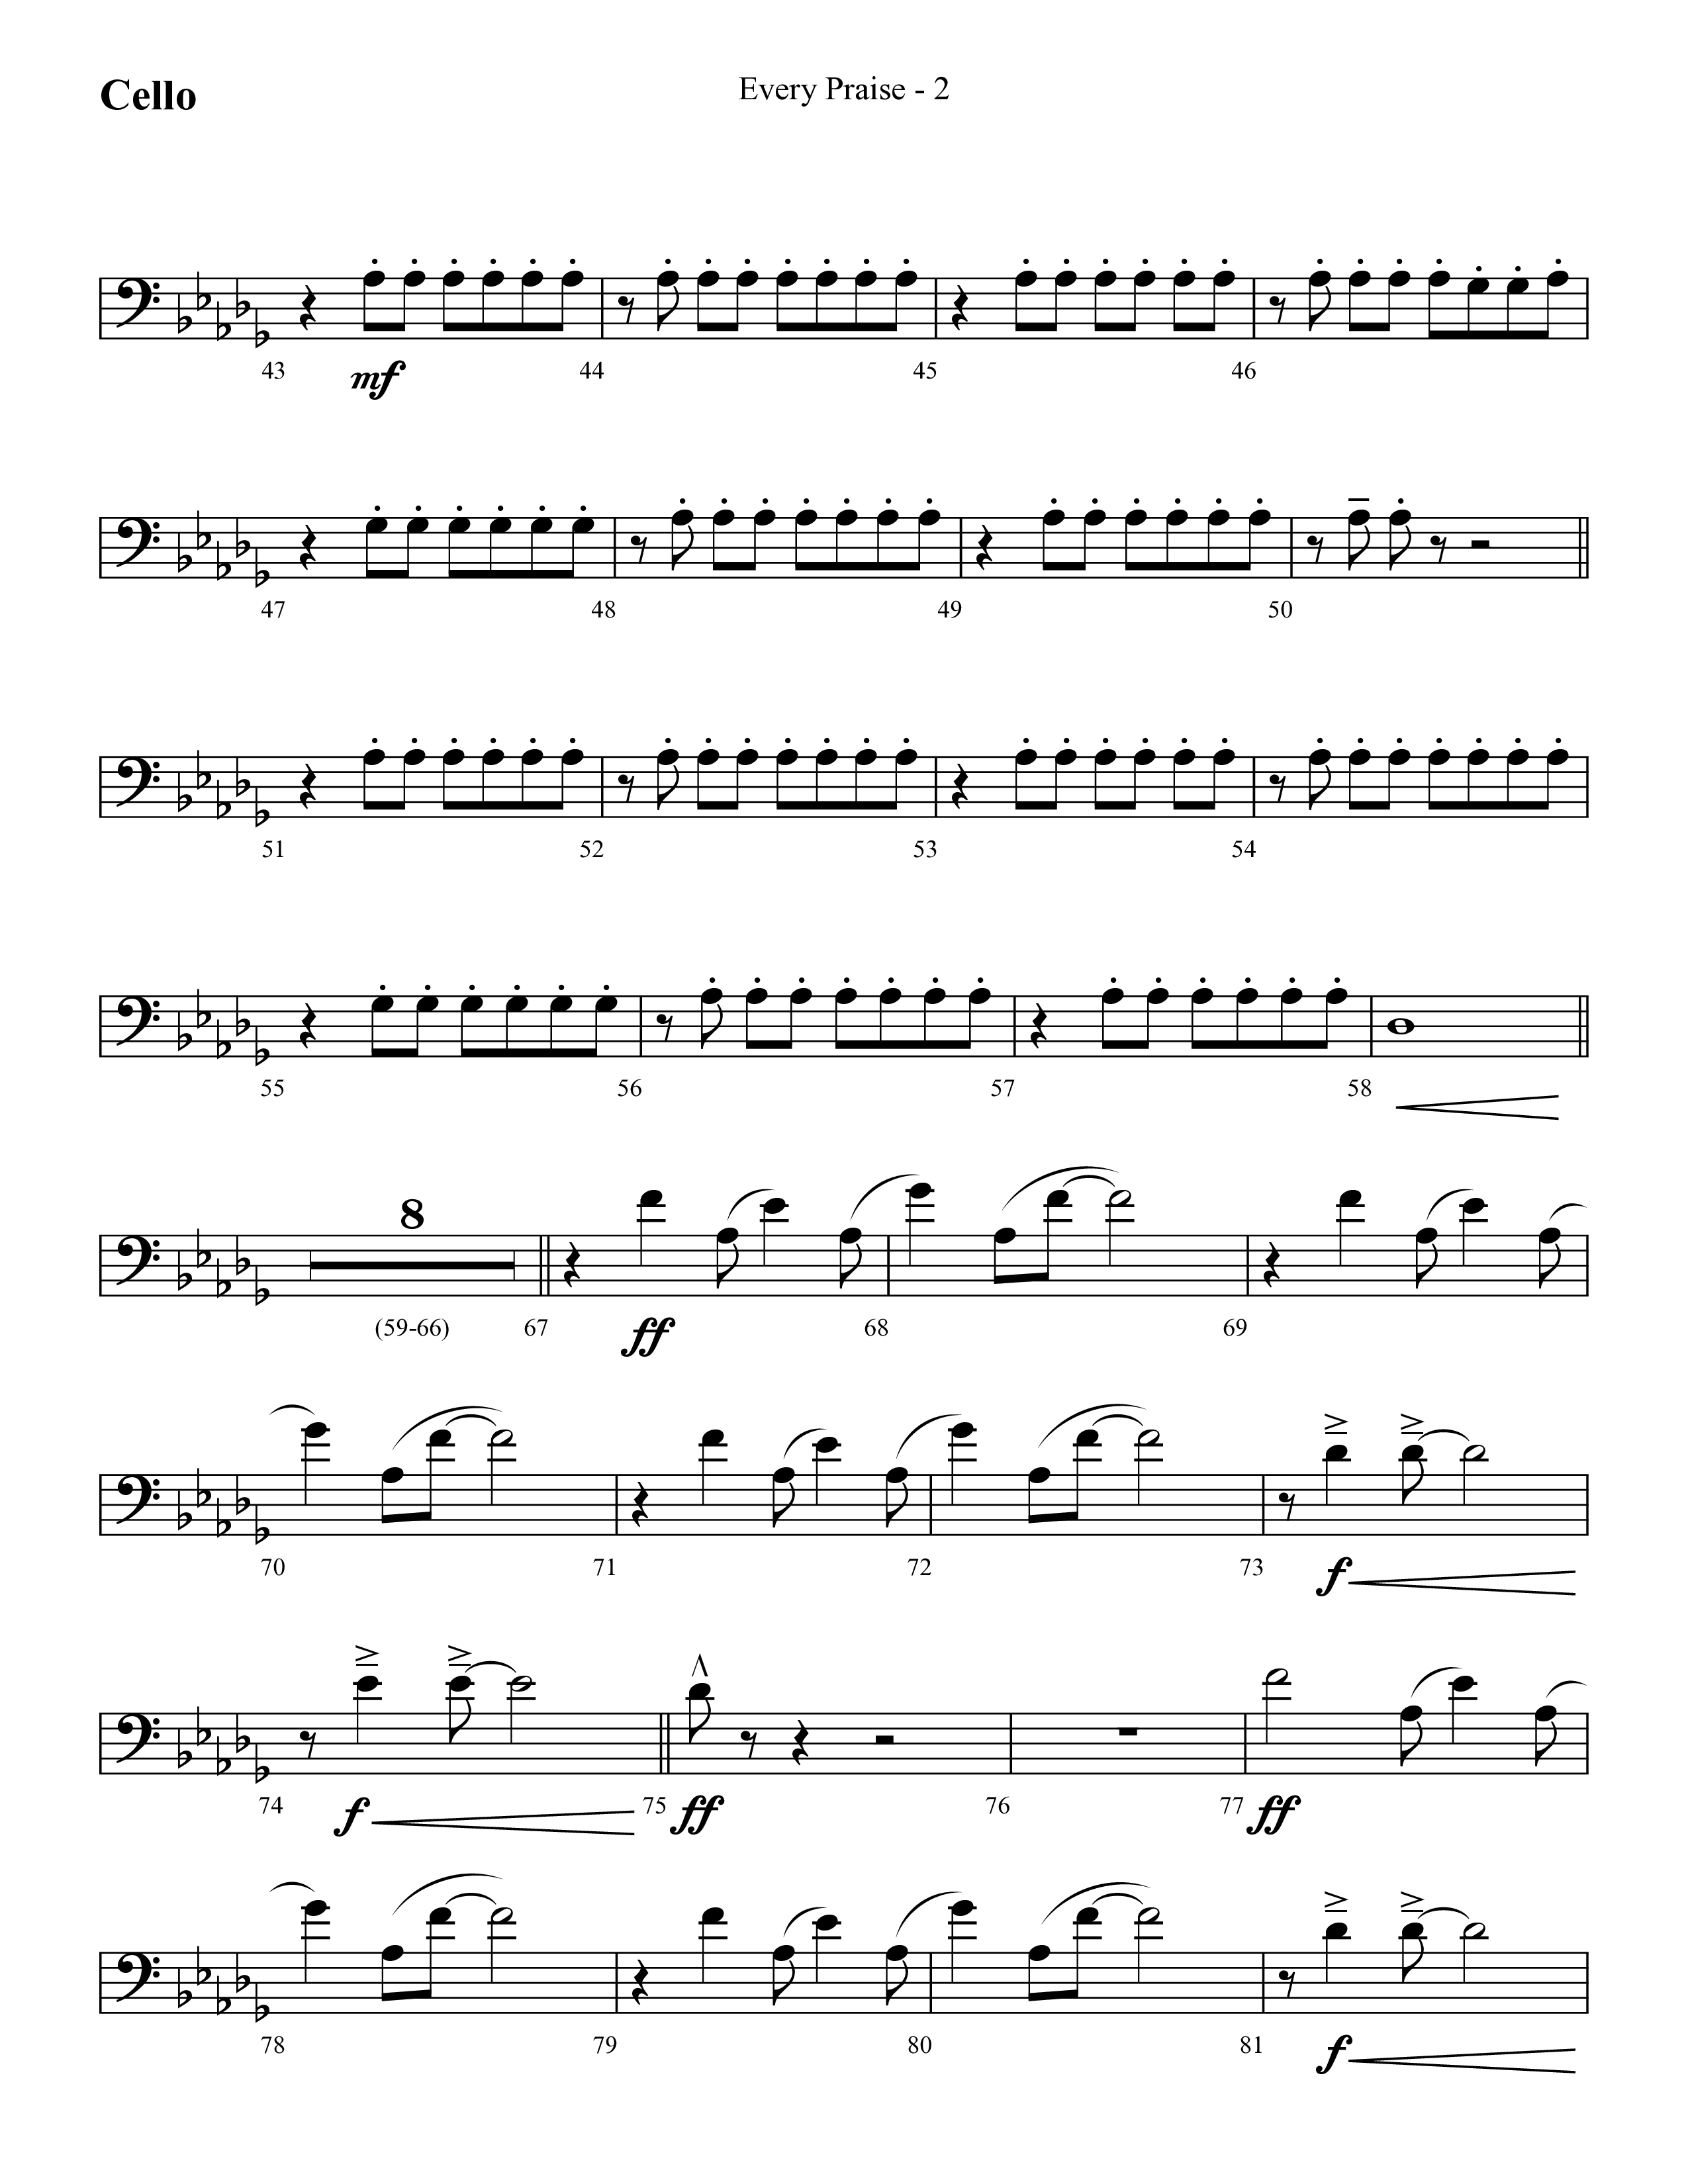 Every Praise (Choral Anthem SATB) Cello (Lifeway Choral / Arr. Cliff Duren)